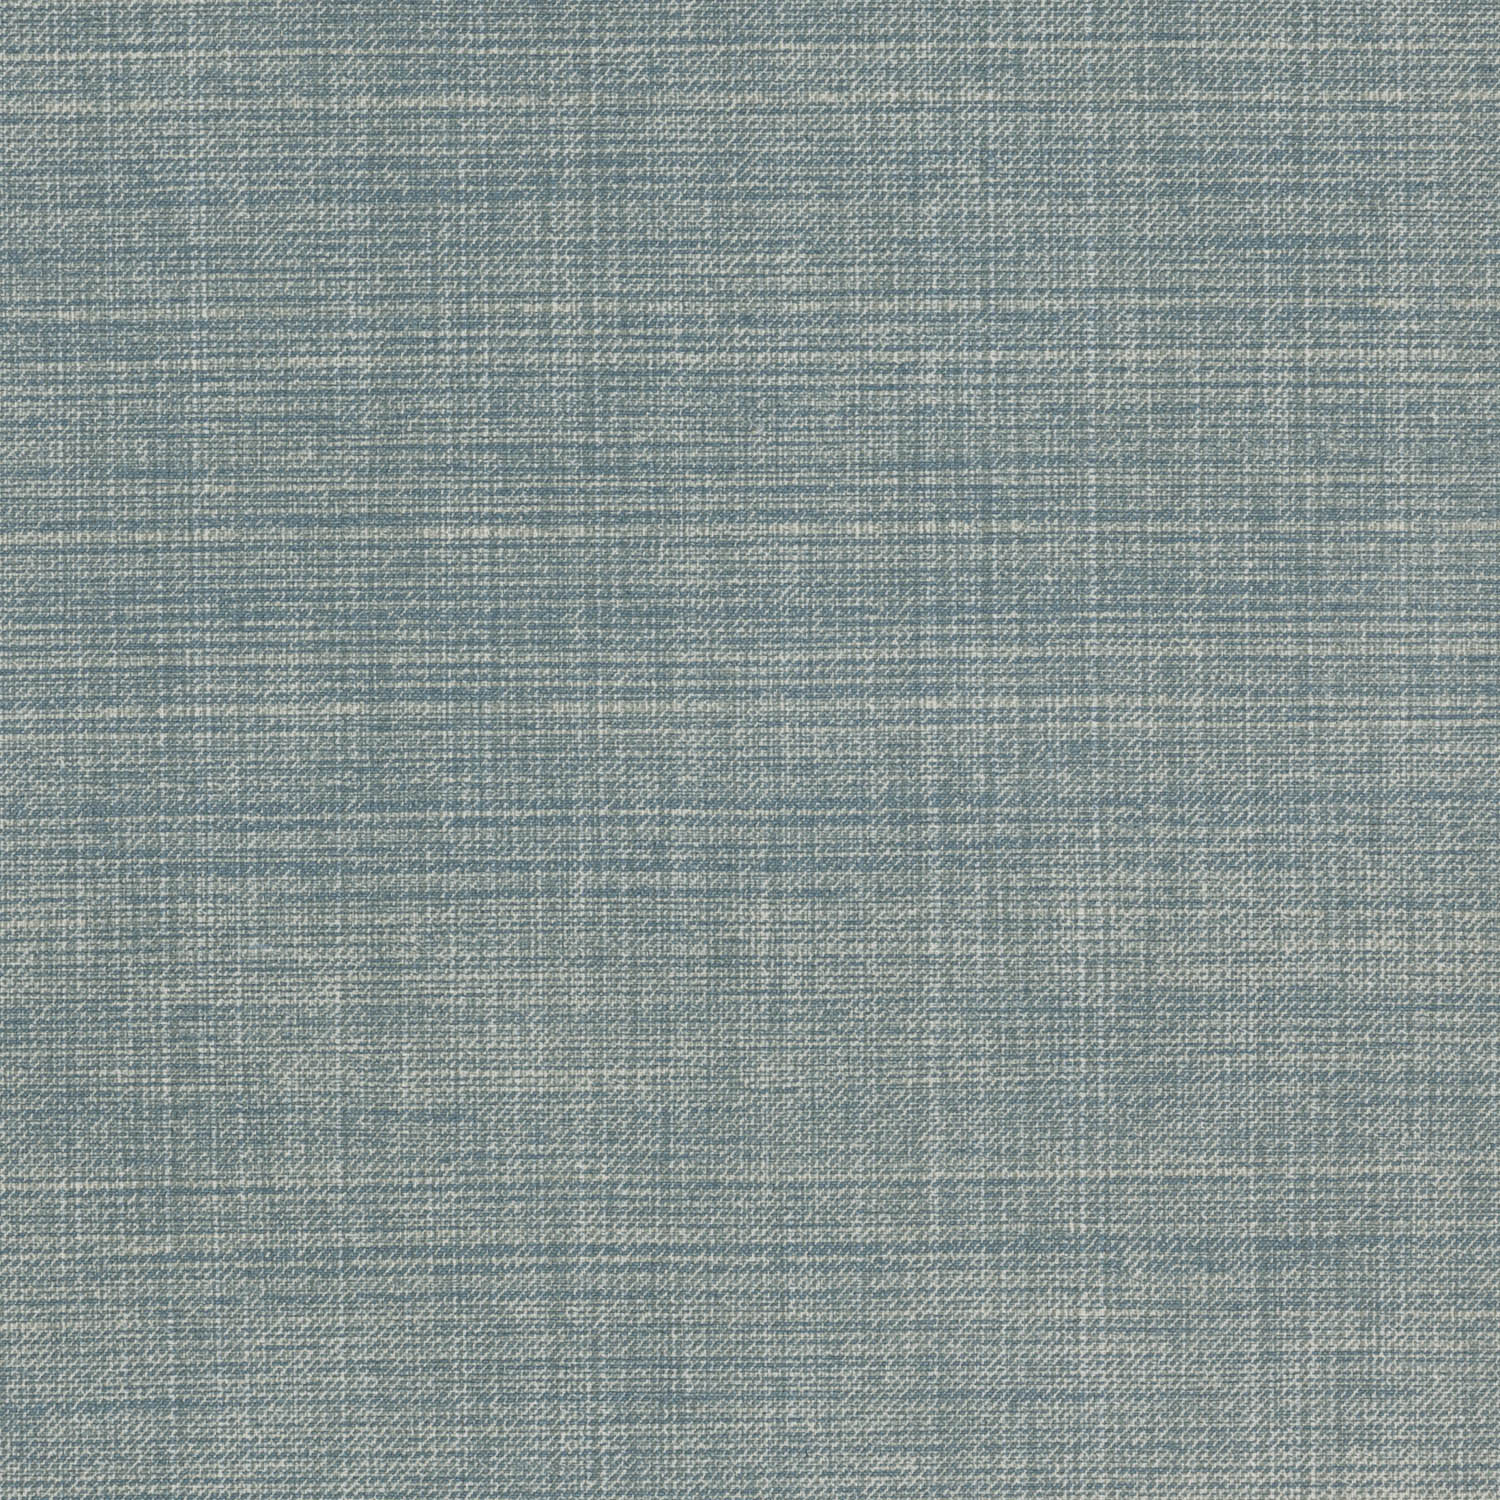 l-098-blue-fermoie-plain-cotton-1.jpg